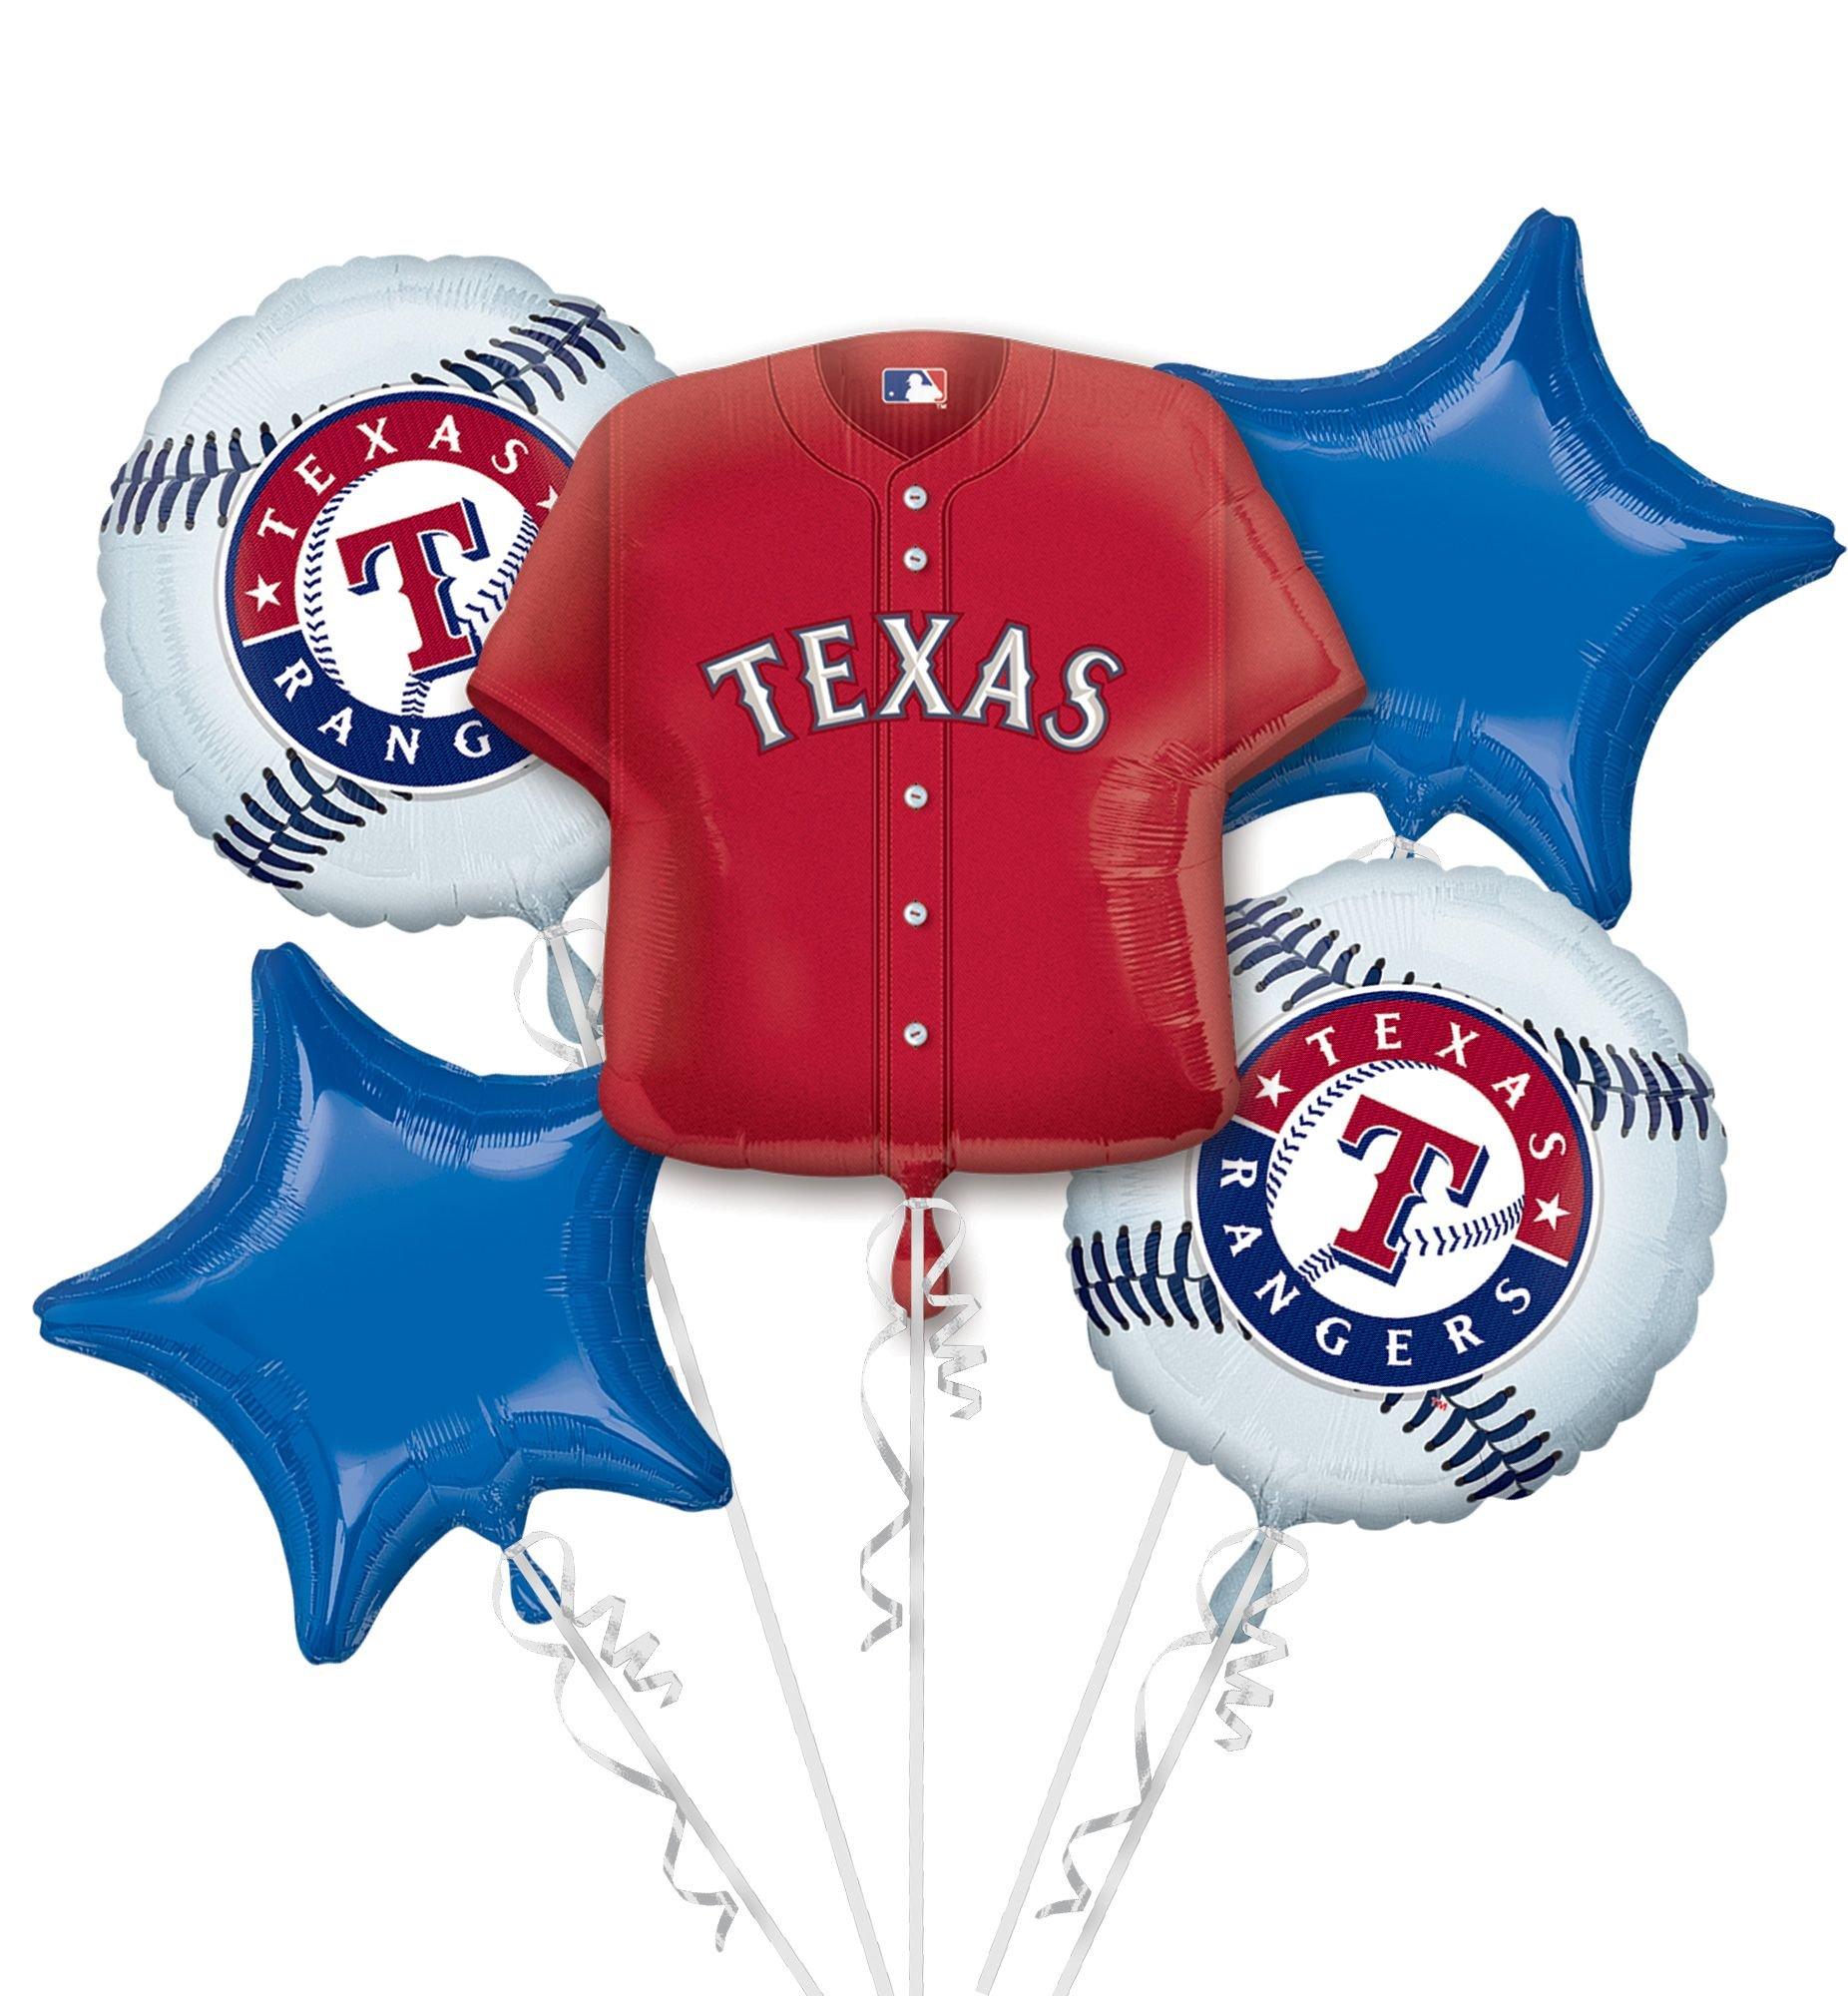 Texas Rangers Balloon Bouquet 5pc - Jersey